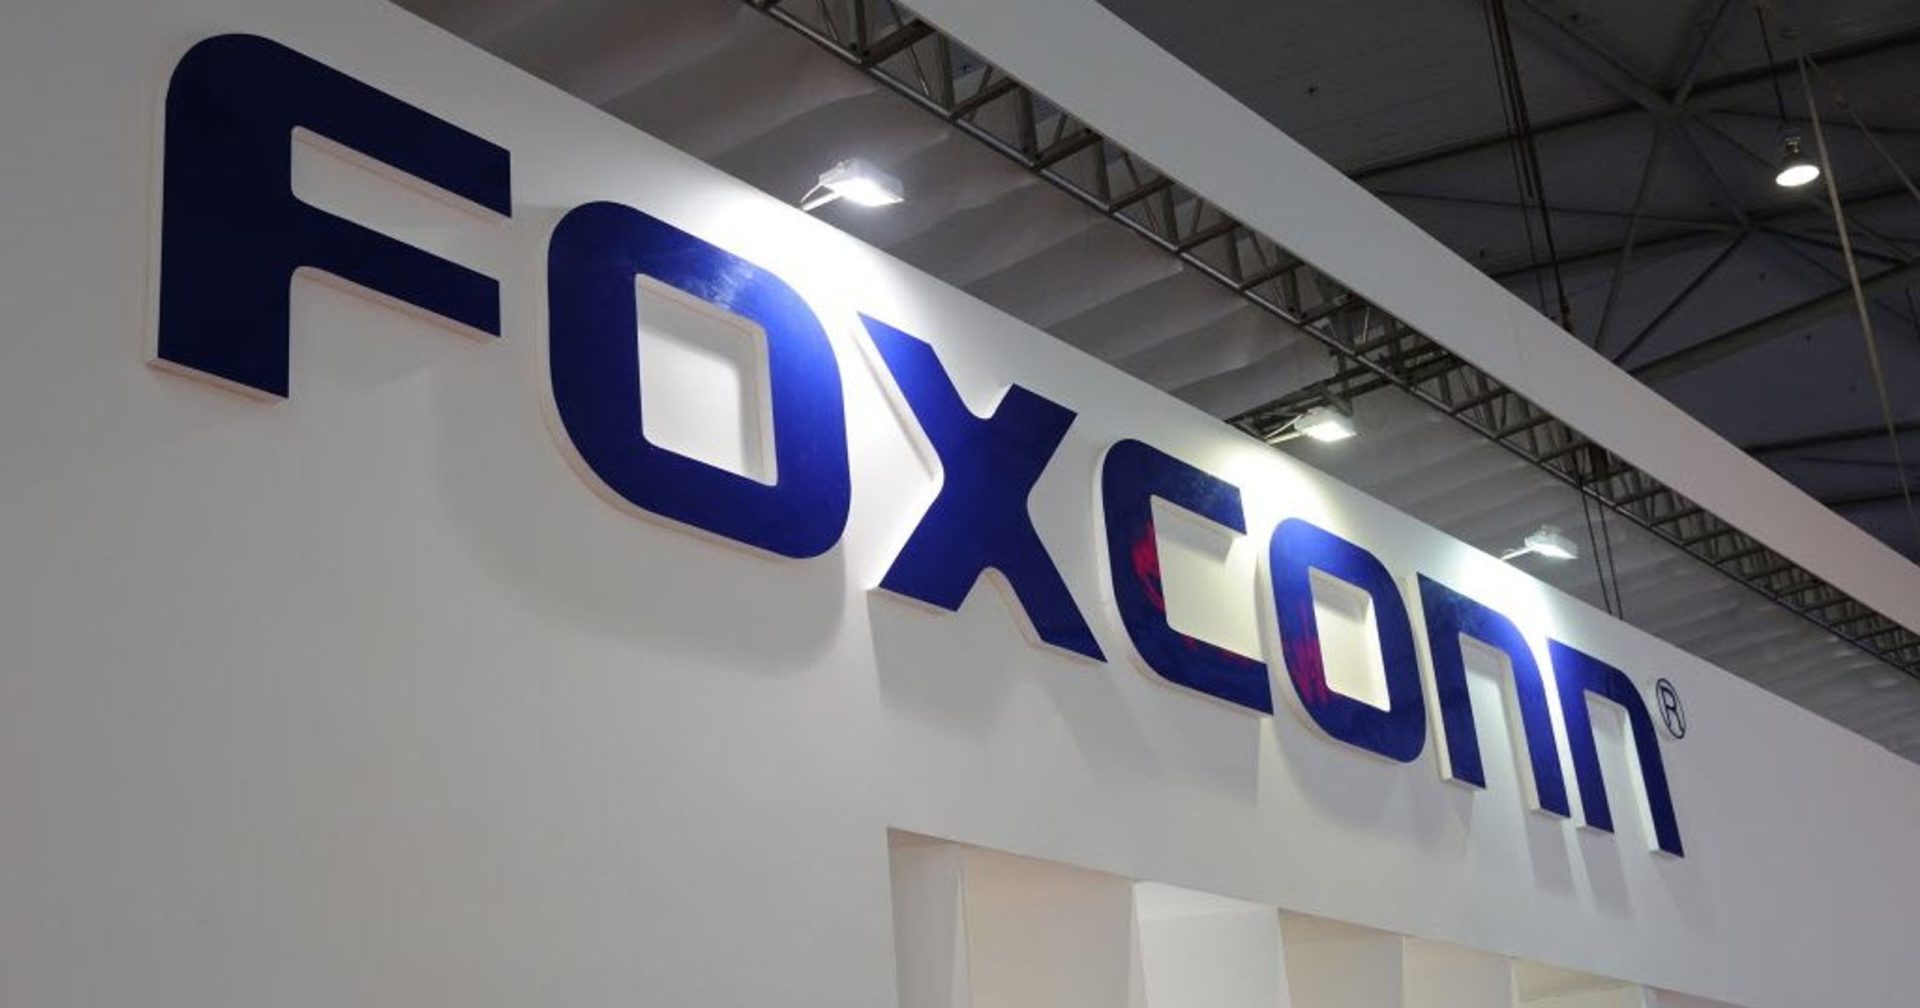 Foxconn โรงงานประกอบ iPhone รายได้ไตรมาส 2 ไม่สูงอย่างที่คาด : ส่อแววอัตราการจำหน่ายชะลอตัว